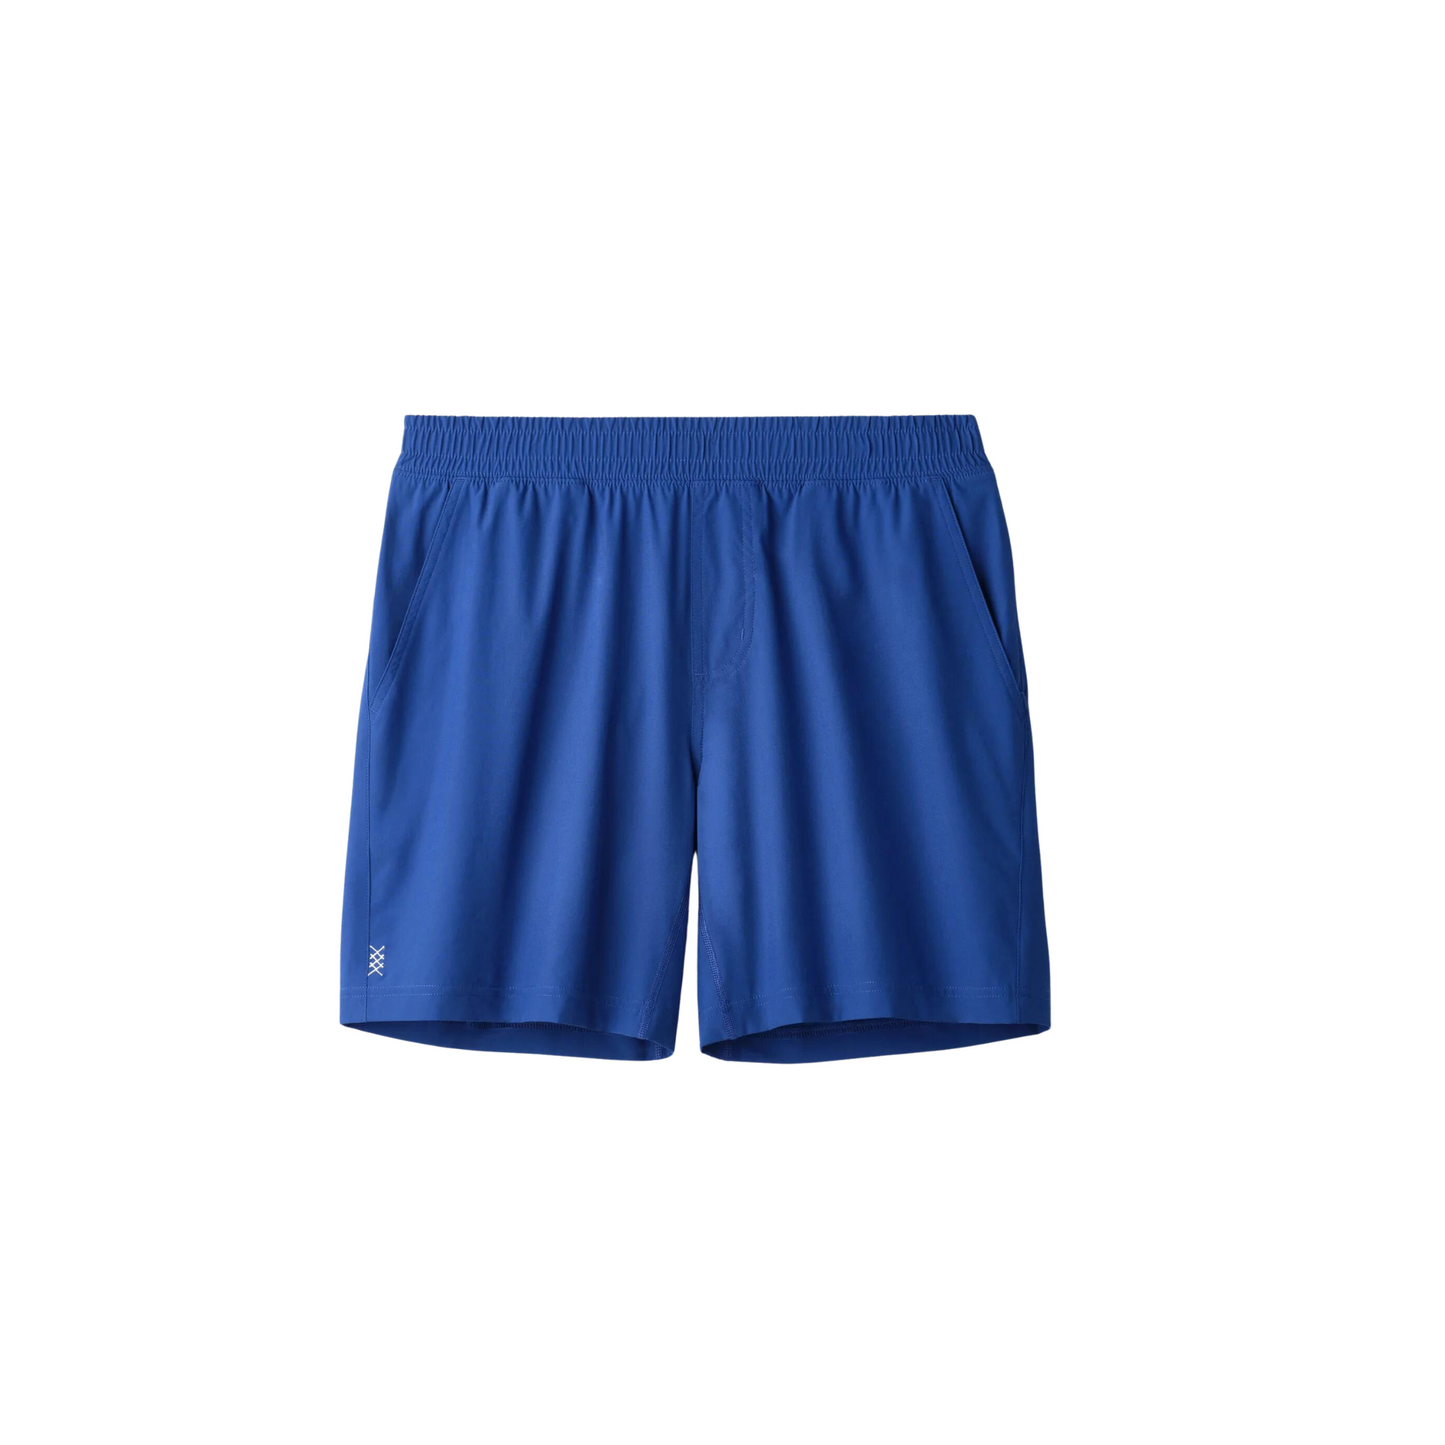 7” Mako Shorts - Unlined